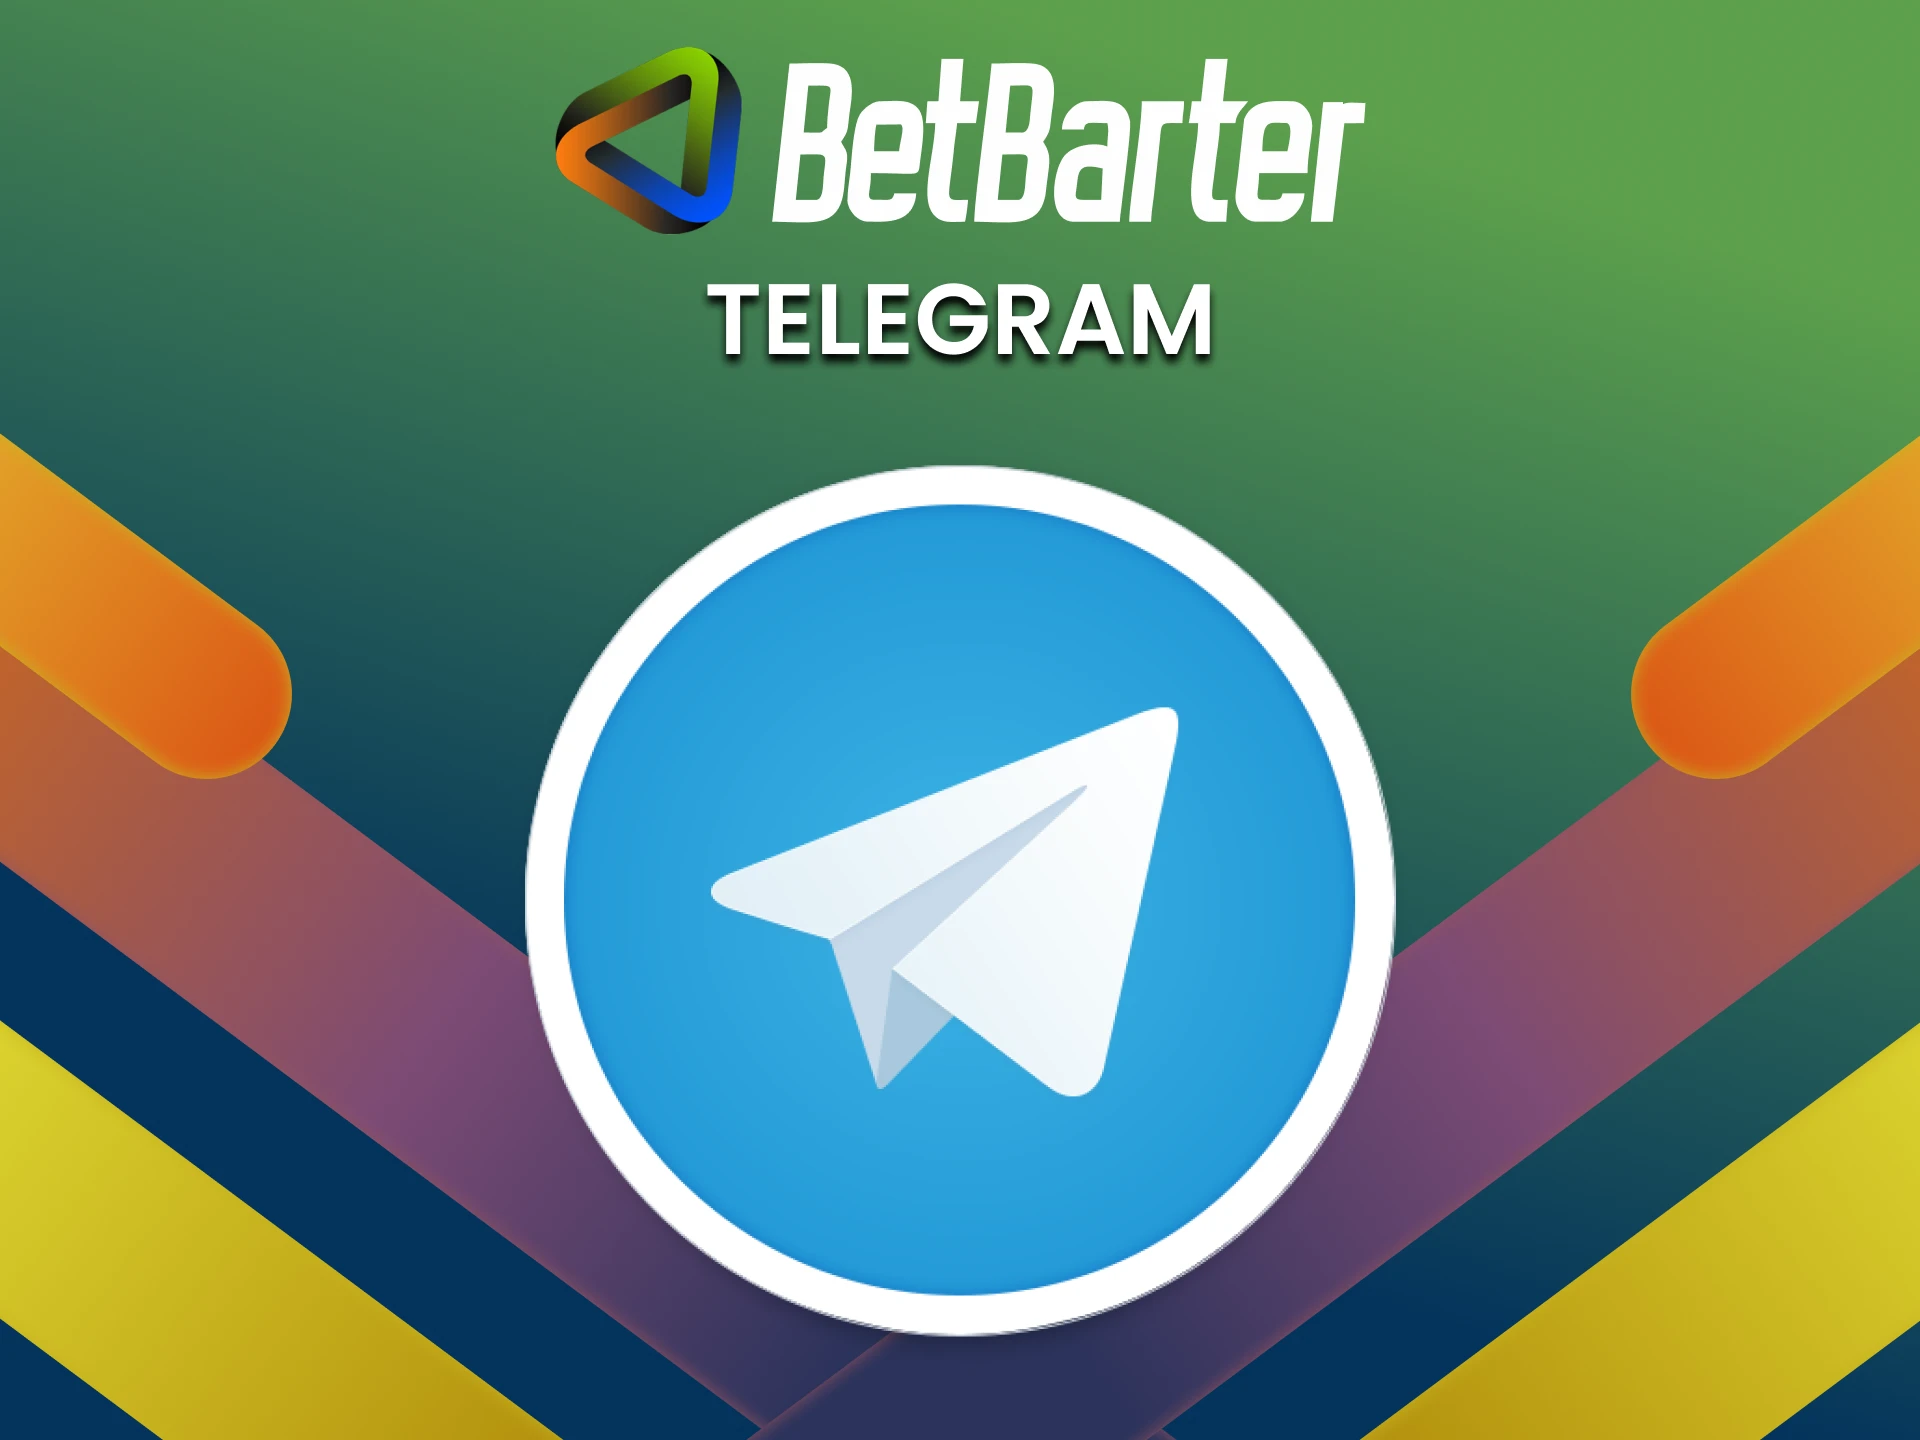 You can contact the BetBarter team via telegram.